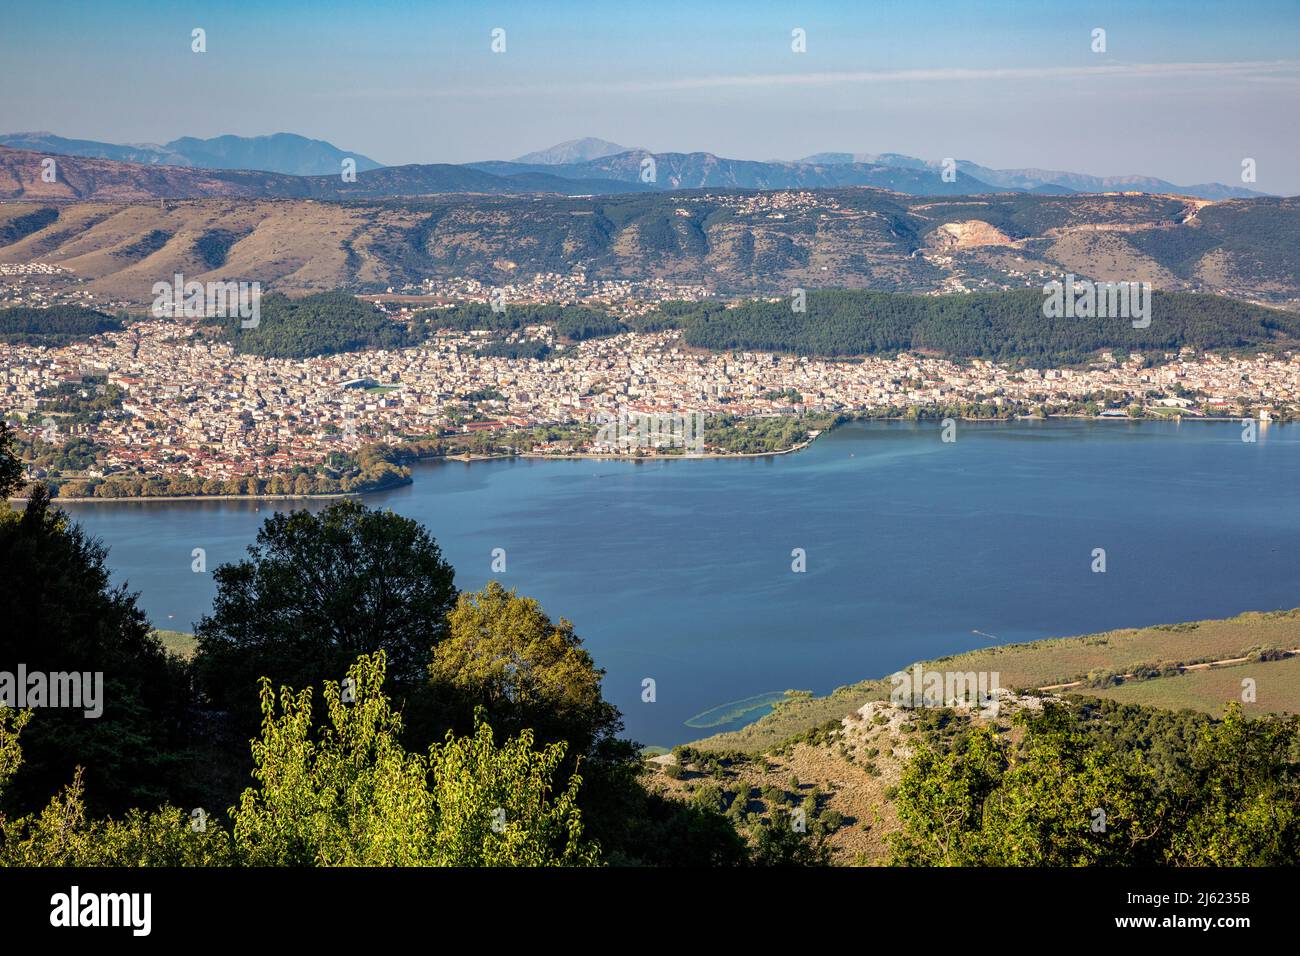 Greece, Epirus, Ioannina, View of Lake Pamvotida and surrounding city in summer Stock Photo